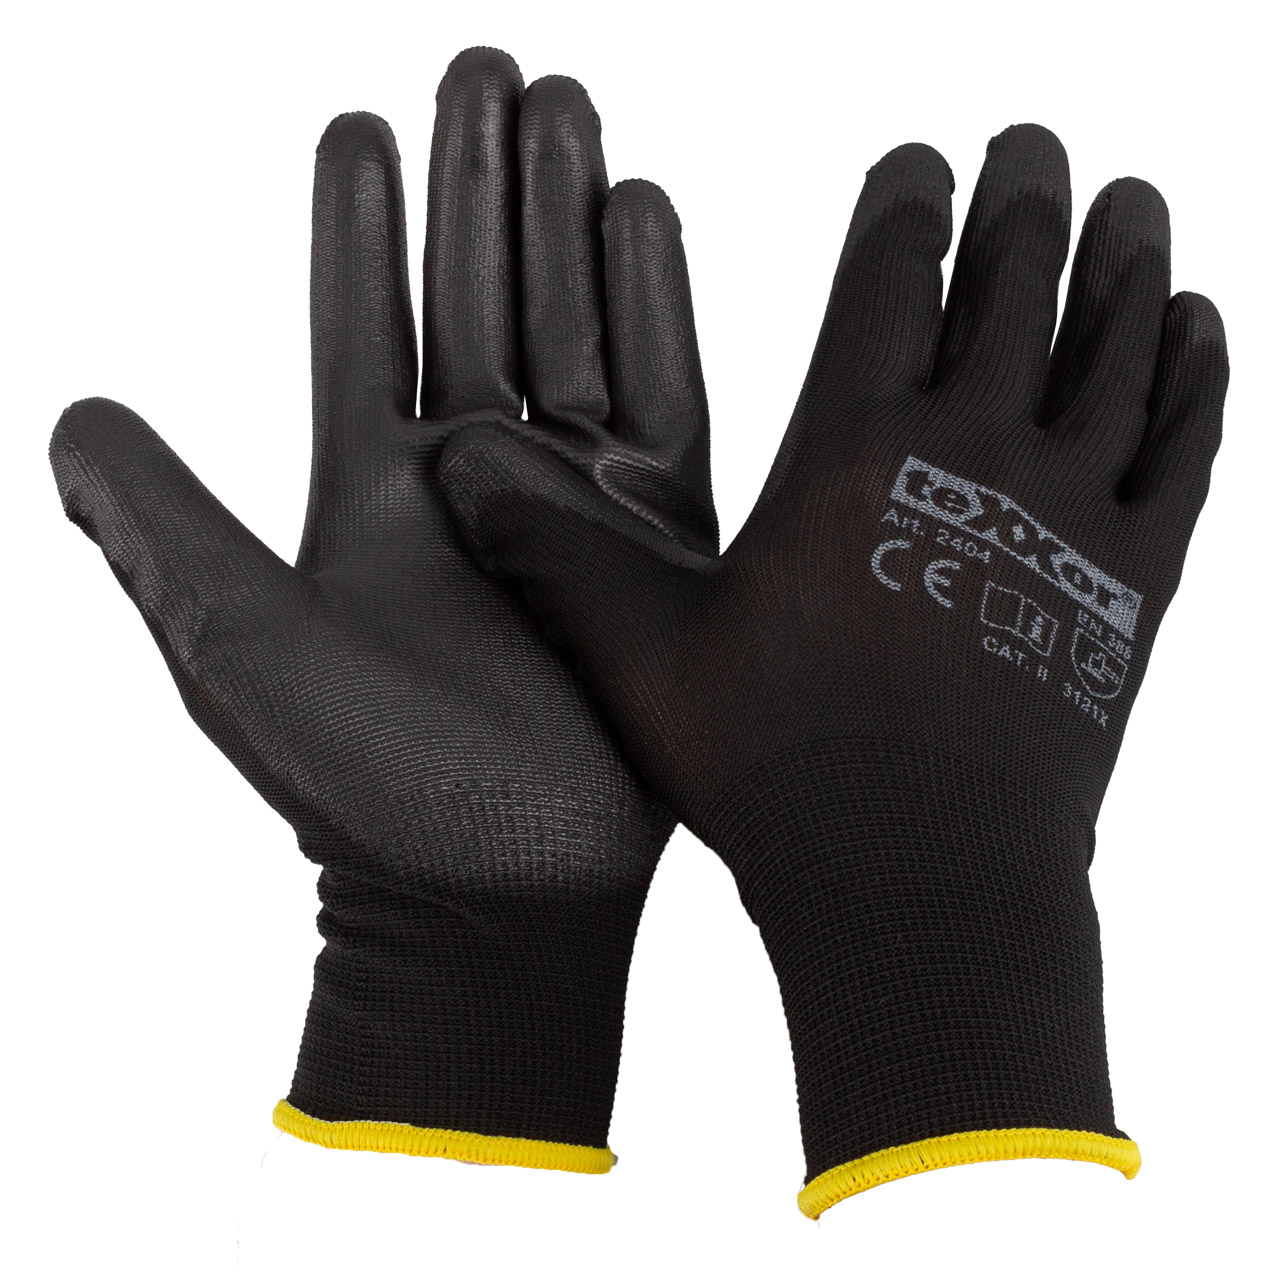 12 Paar TEXXOR Handschuhe Arbeitshandschuhe Strickhandschuhe Schwarz Größe 9 / L